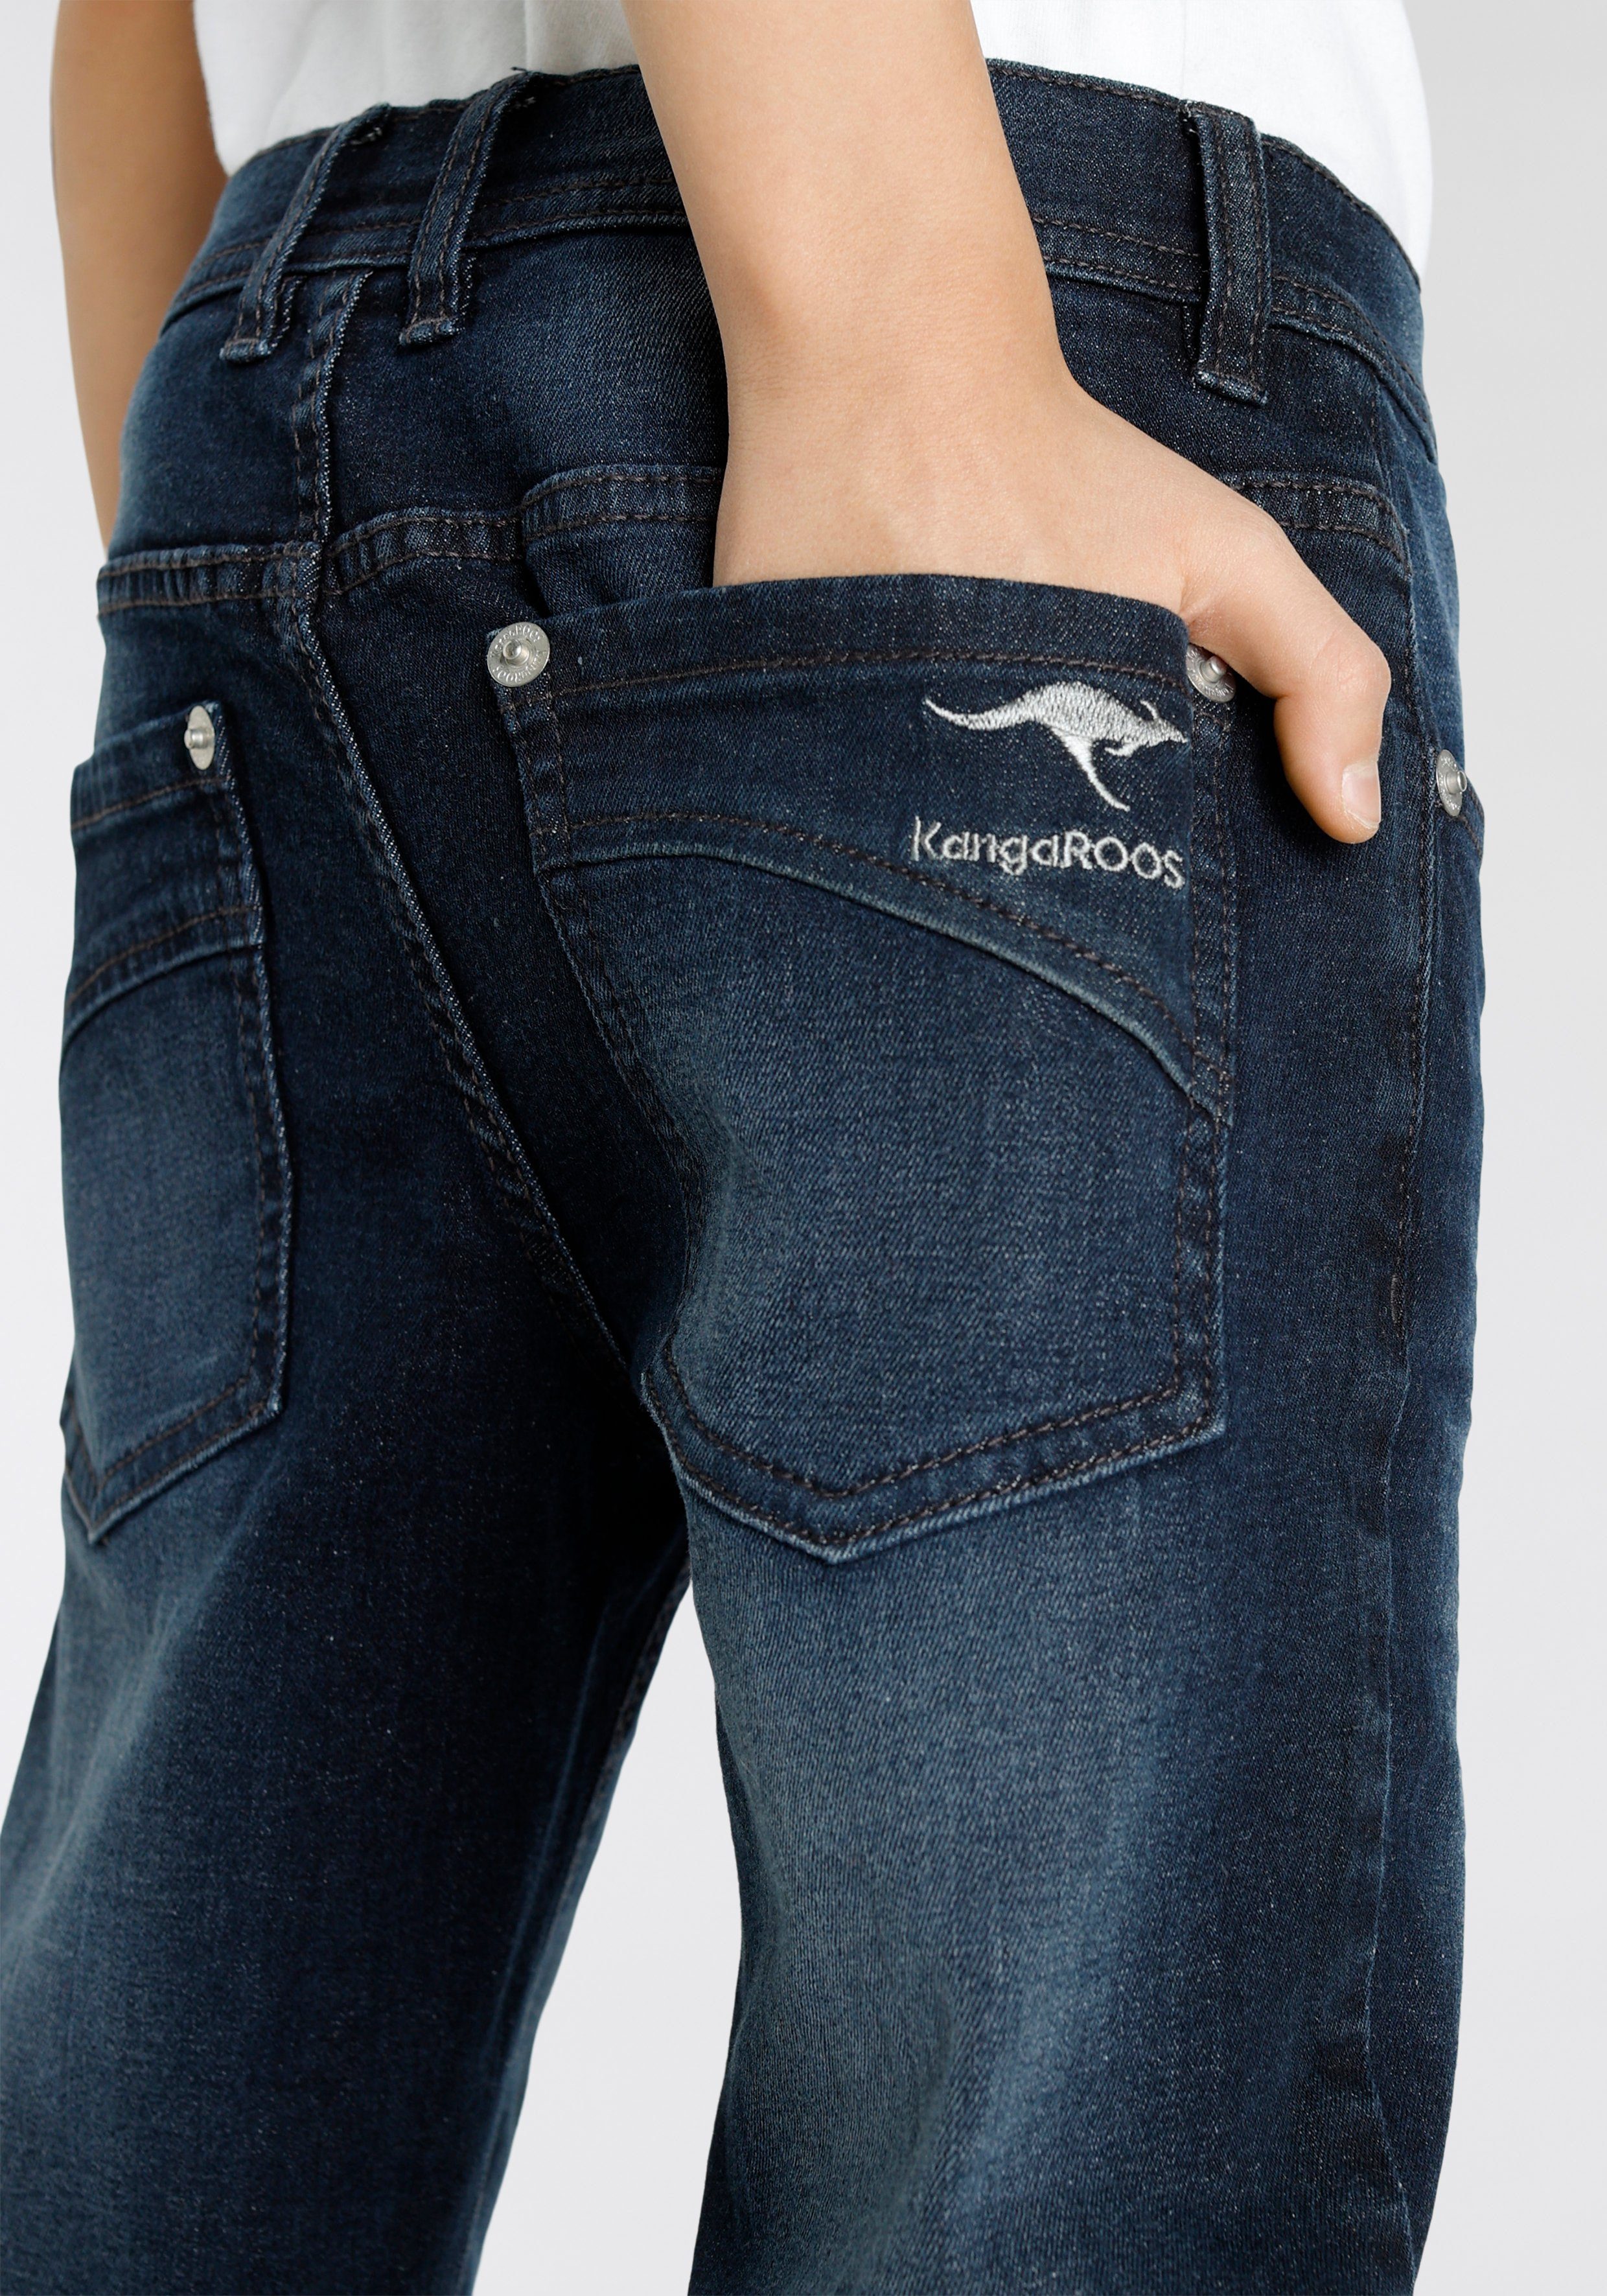 KangaROOS Stretch-Jeans, geradem mit regular fit Beinverlauf